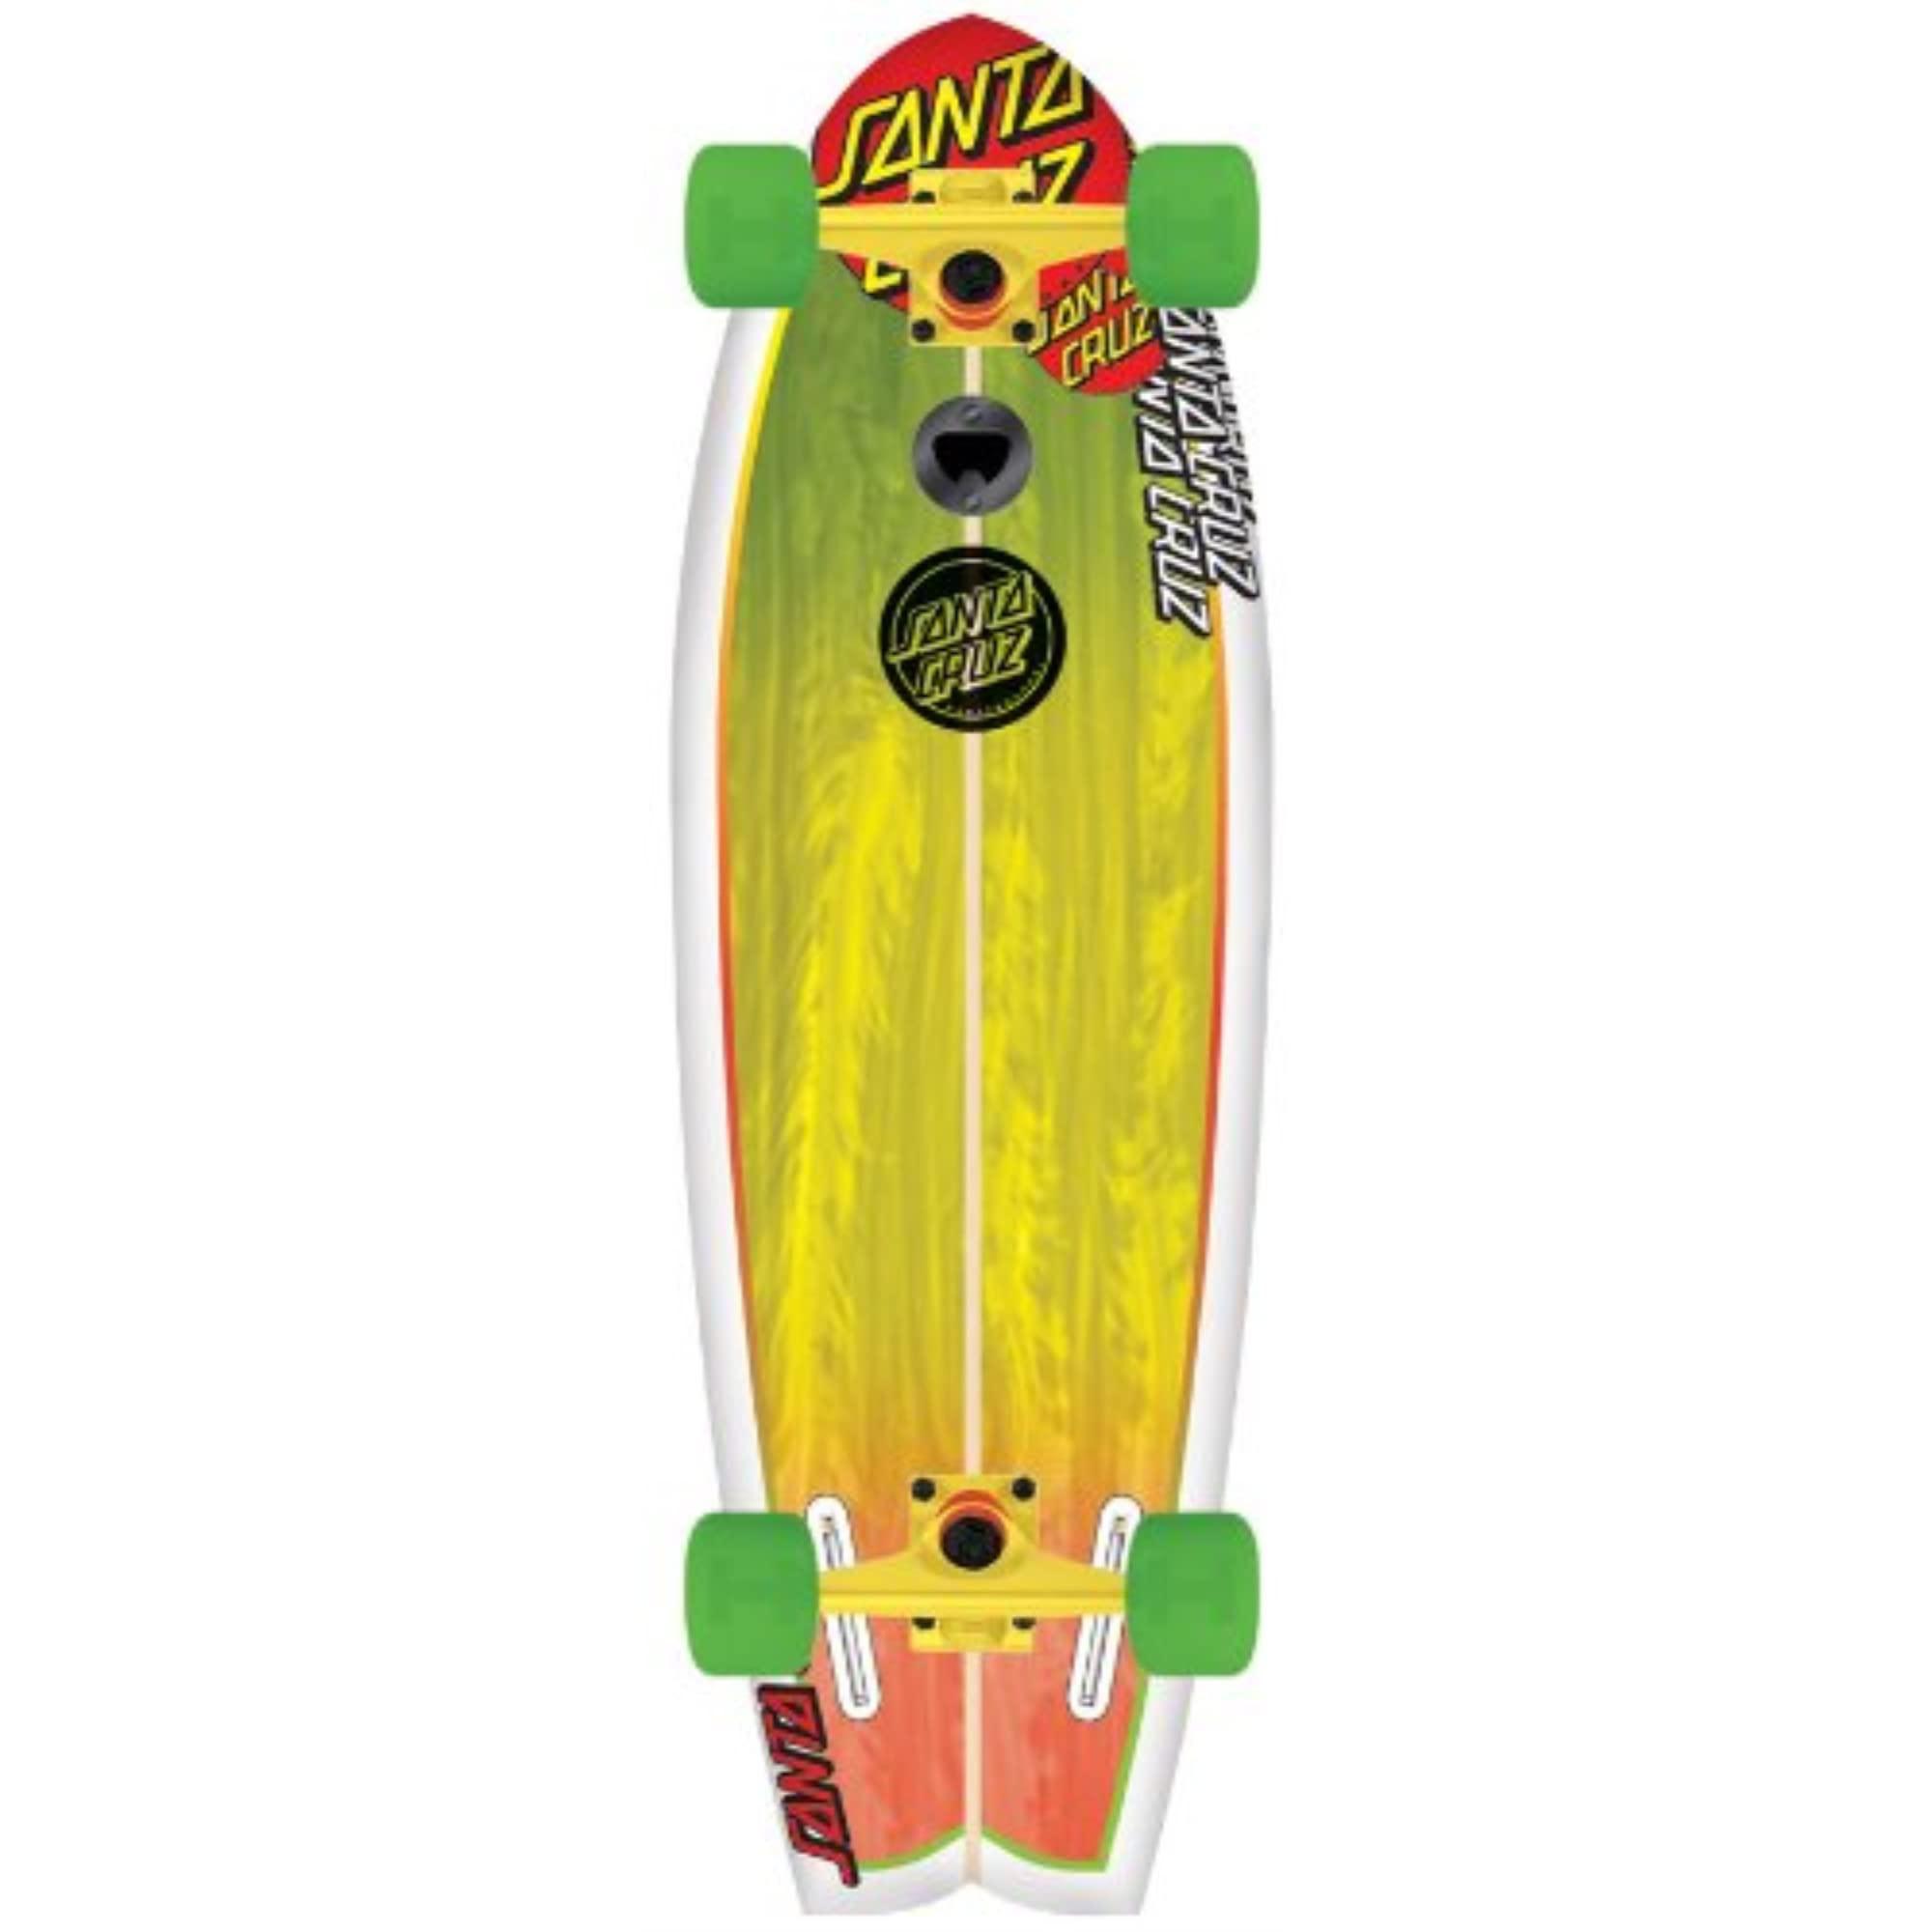 santa cruz skate land shark rasta sk8 complete skate boards, 8.8 x 27.7-inch